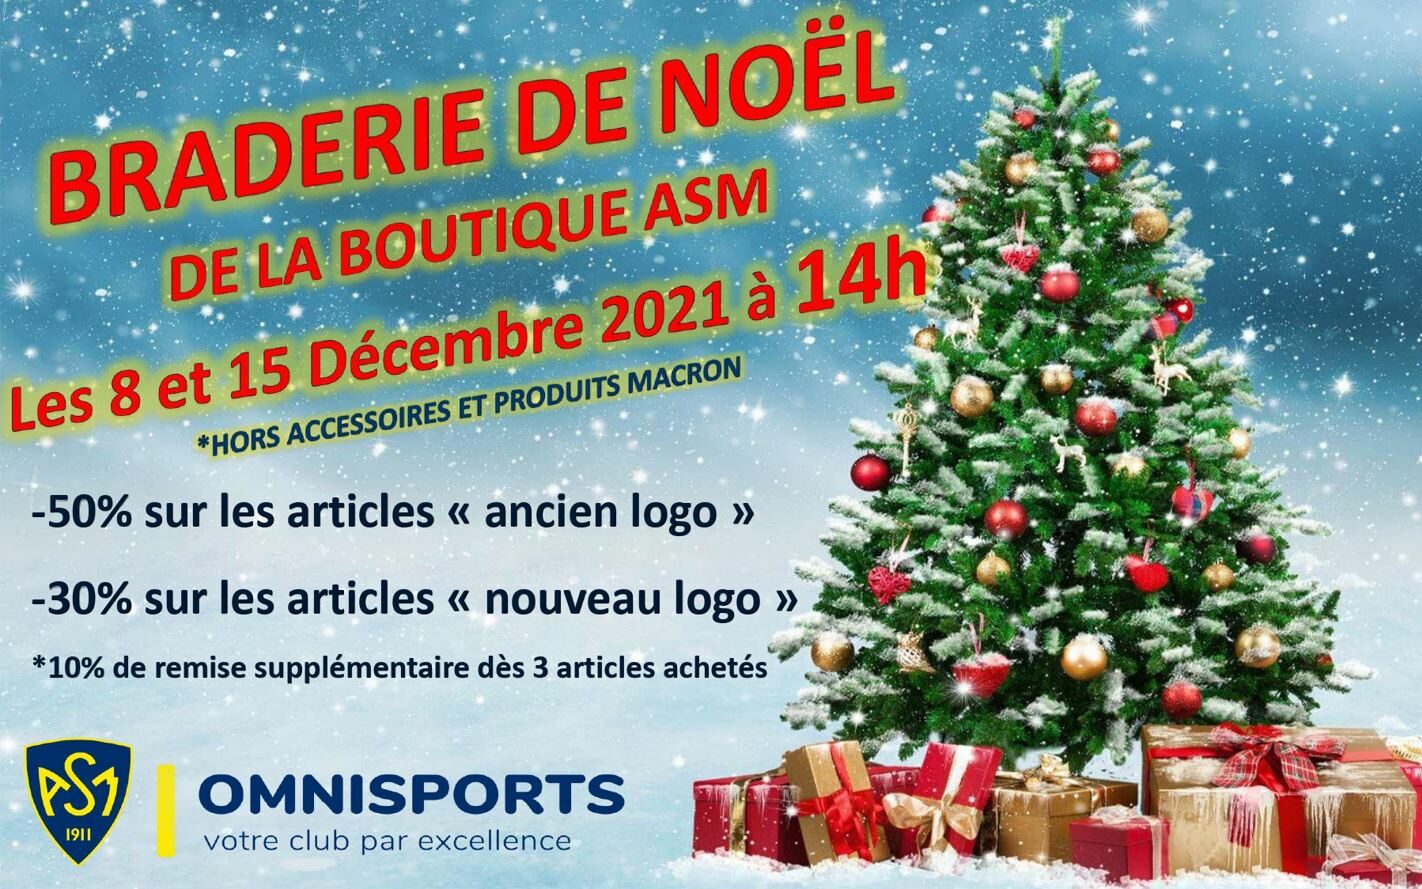 L’ASM organise sa braderie de Noël les mercredis 8 & 15 décembre